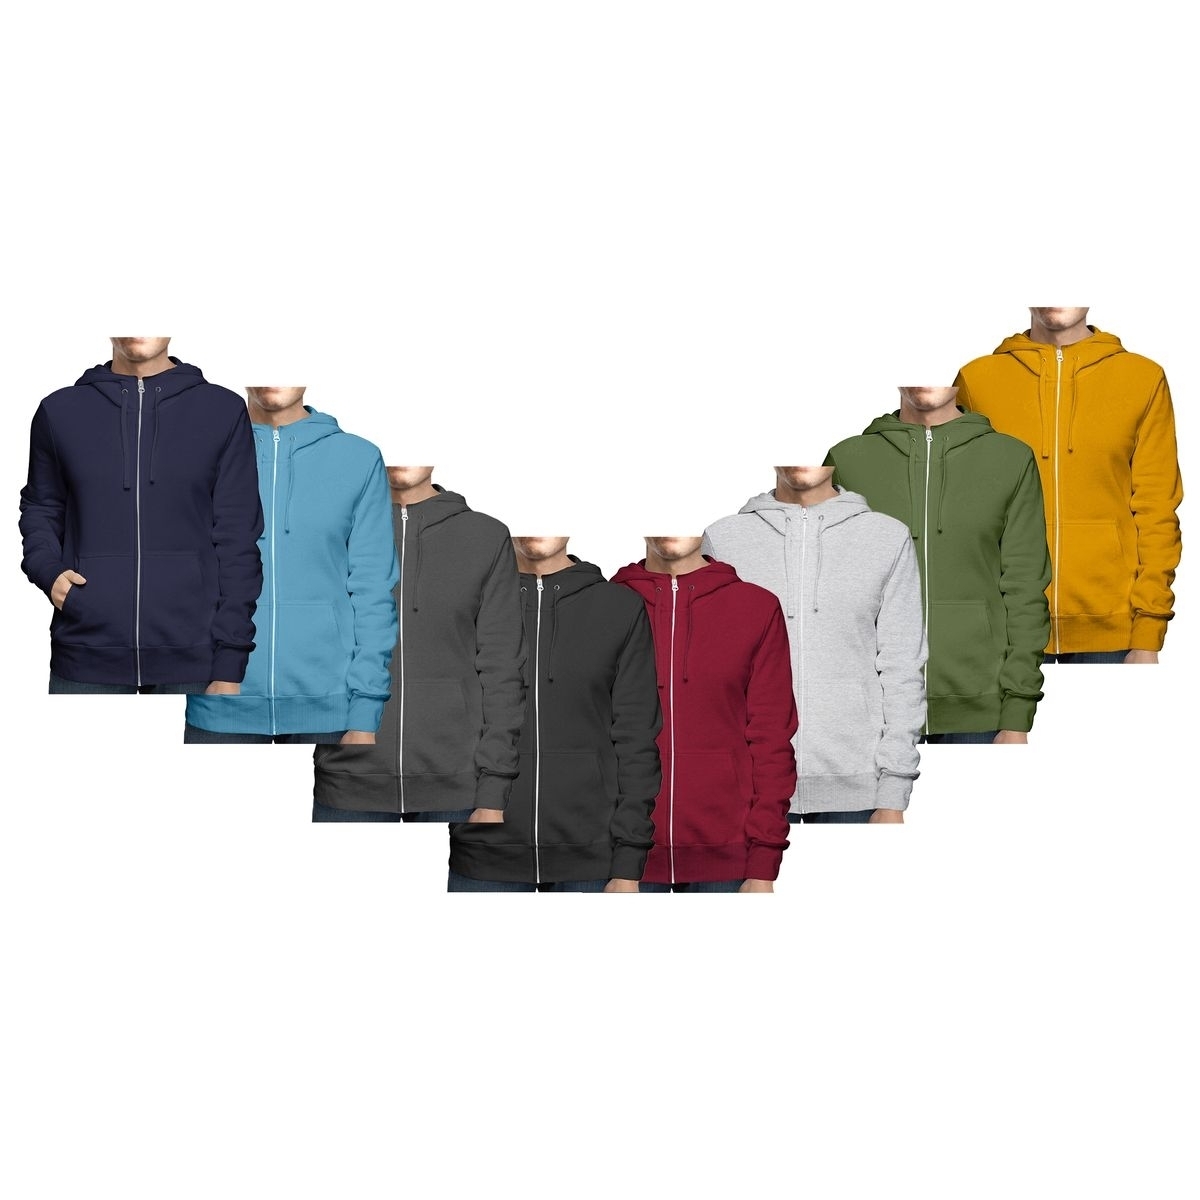 2-Pack: Men's Winter Warm Soft Cozy Full Zip-Up Fleece Lined Hoodie Sweatshirt - 3X